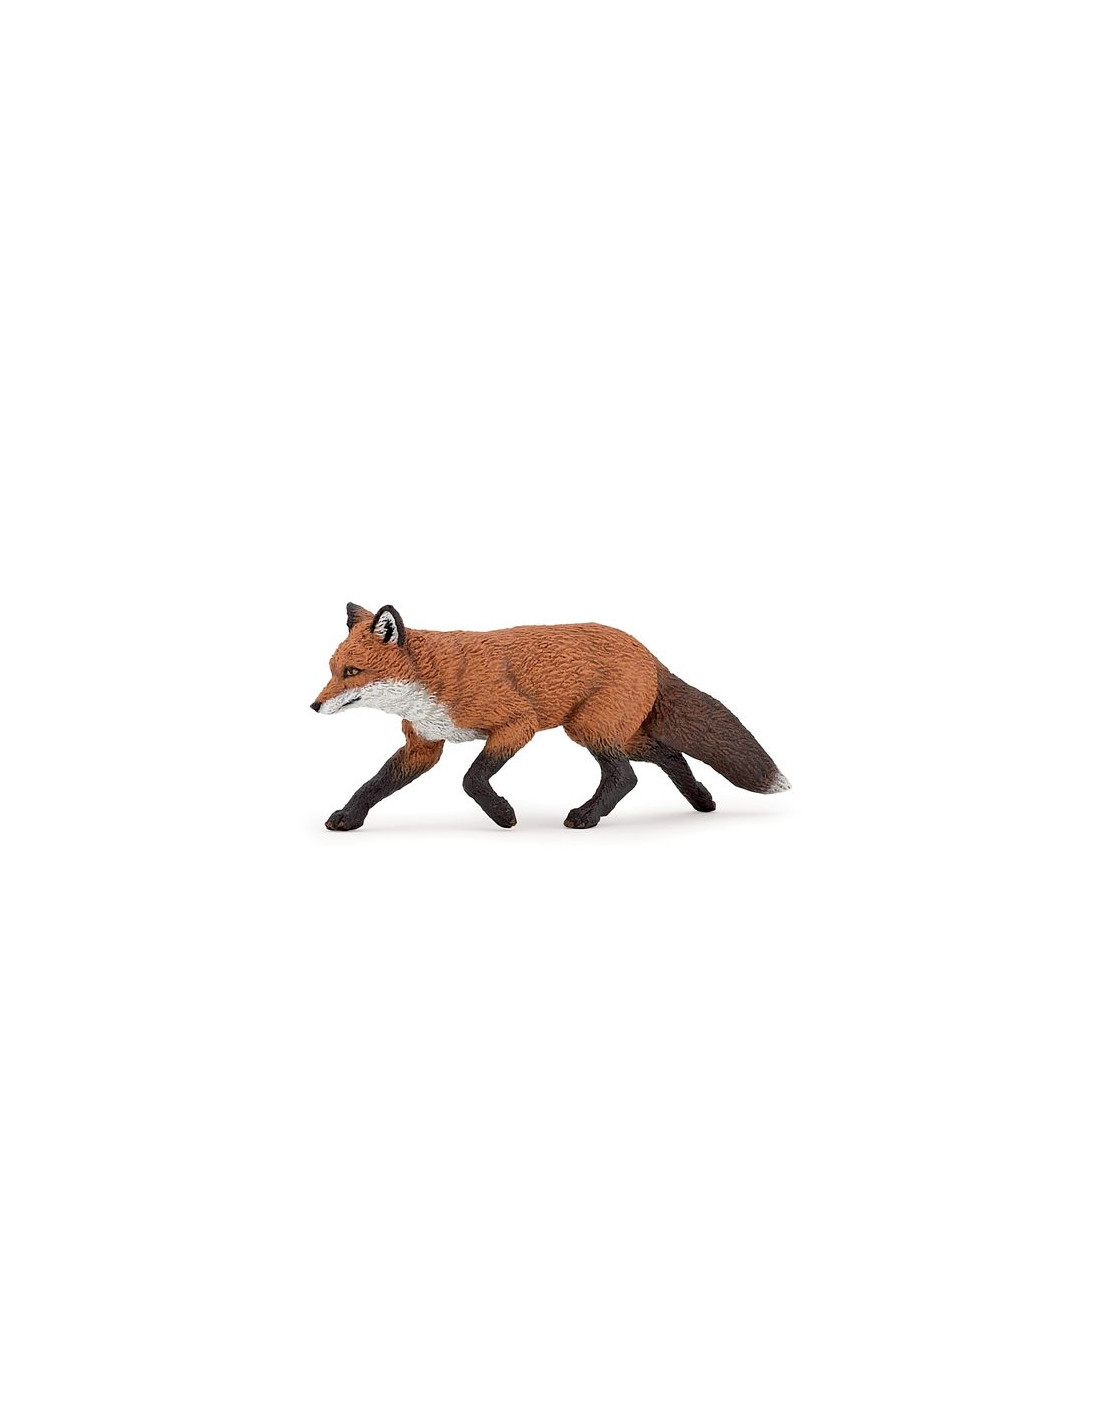 Figurine renard - Papo